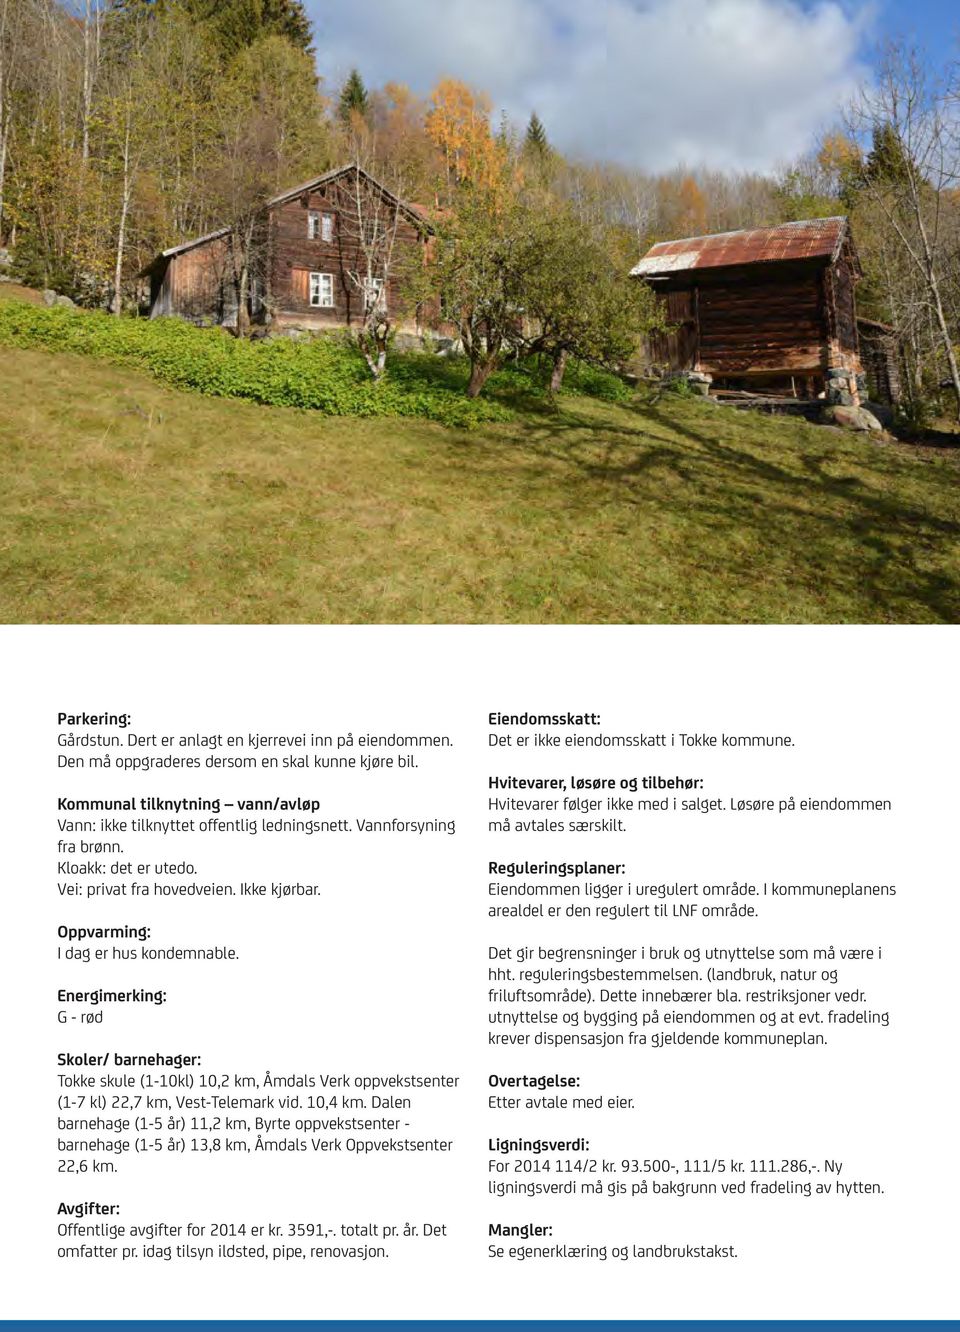 Energimerking: G - rød Skoler/ barnehager: Tokke skule (1-10kl) 10,2 km, Åmdals Verk oppvekstsenter (1-7 kl) 22,7 km, Vest-Telemark vid. 10,4 km.